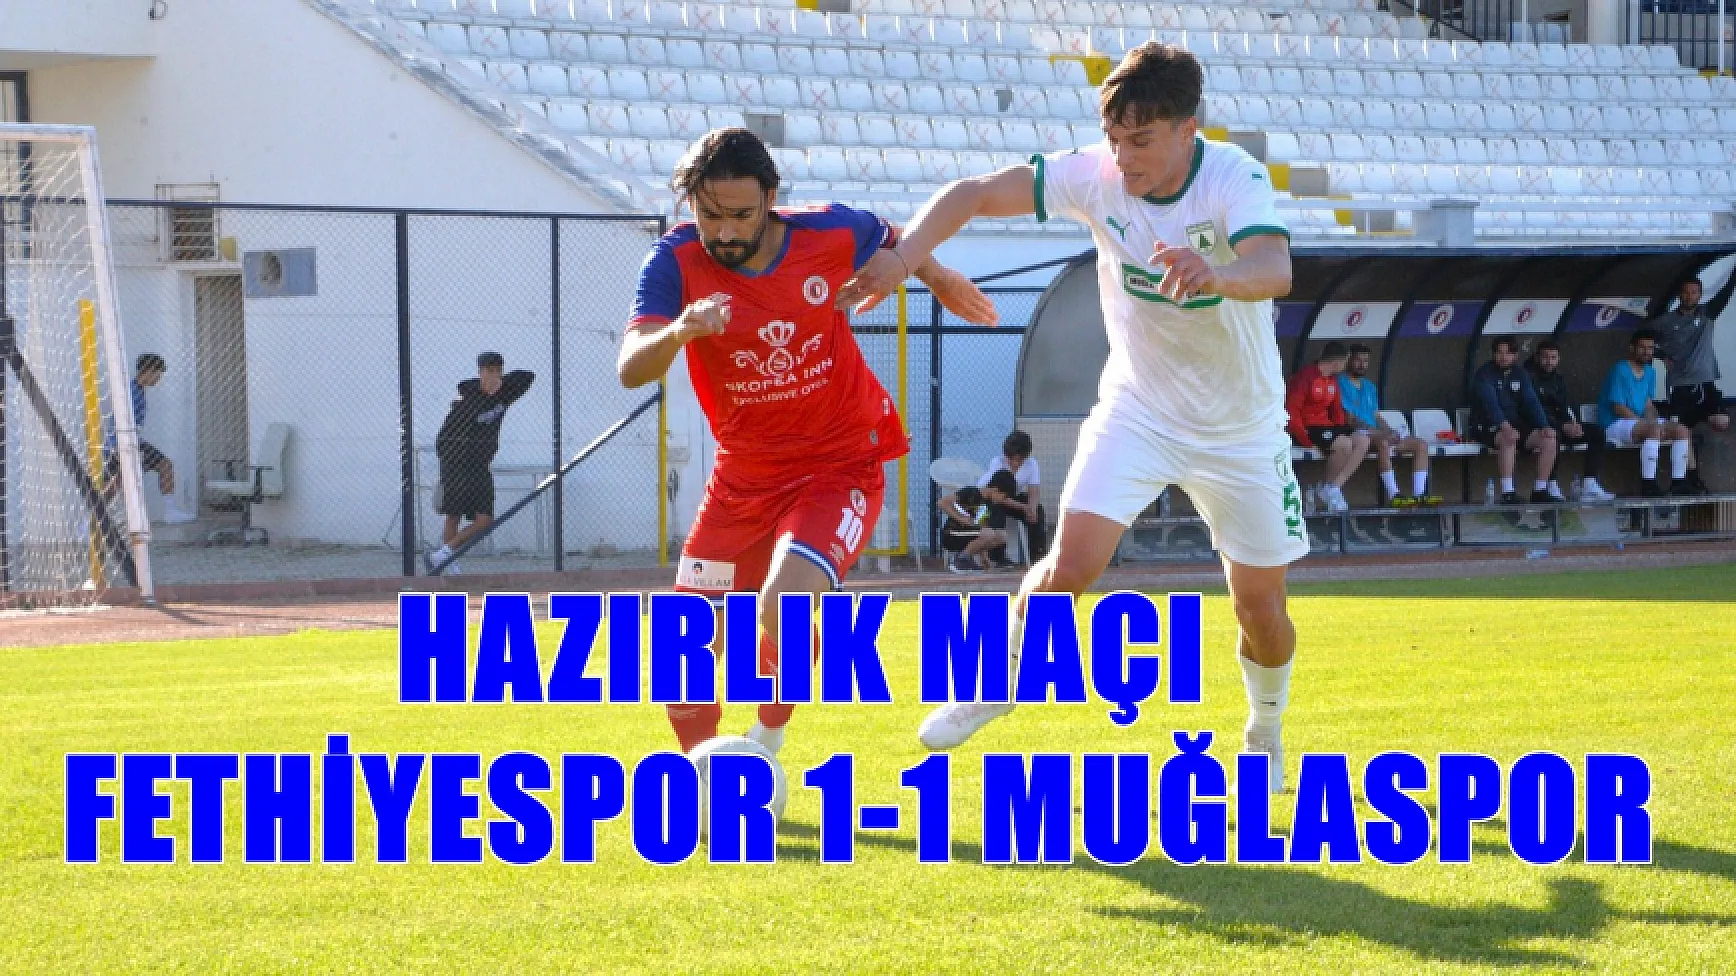 Fethiyespor, Muğlaspor ile hazırlık maçında karşılaştı: 1-1